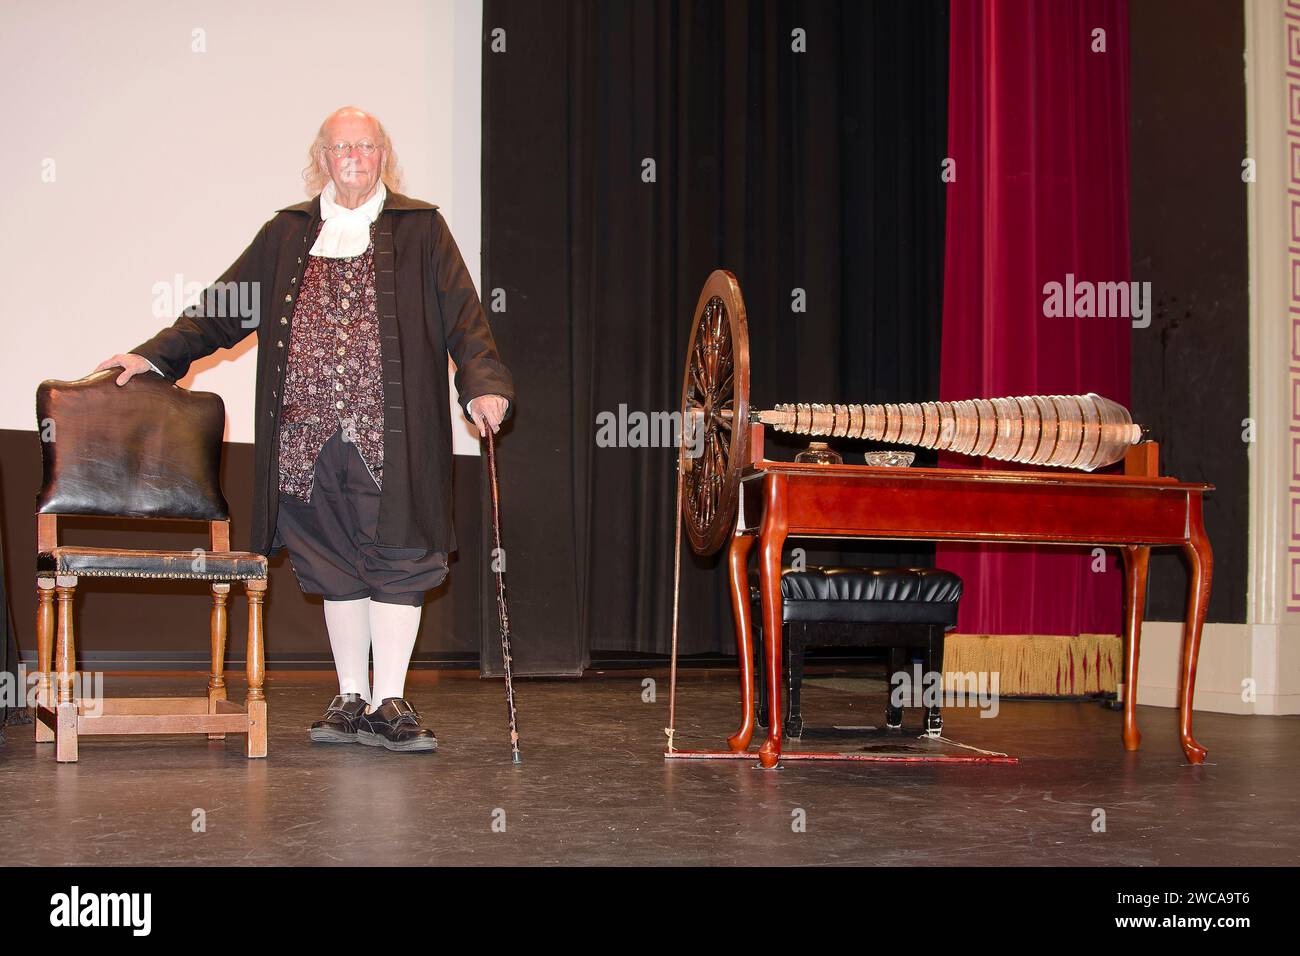 Ben Franklin interprete, accanto a Glass Harmonica, armonica, inventata da Ben Franklin, strumento musicale coloniale, unico, ruota da girare, formica Foto Stock